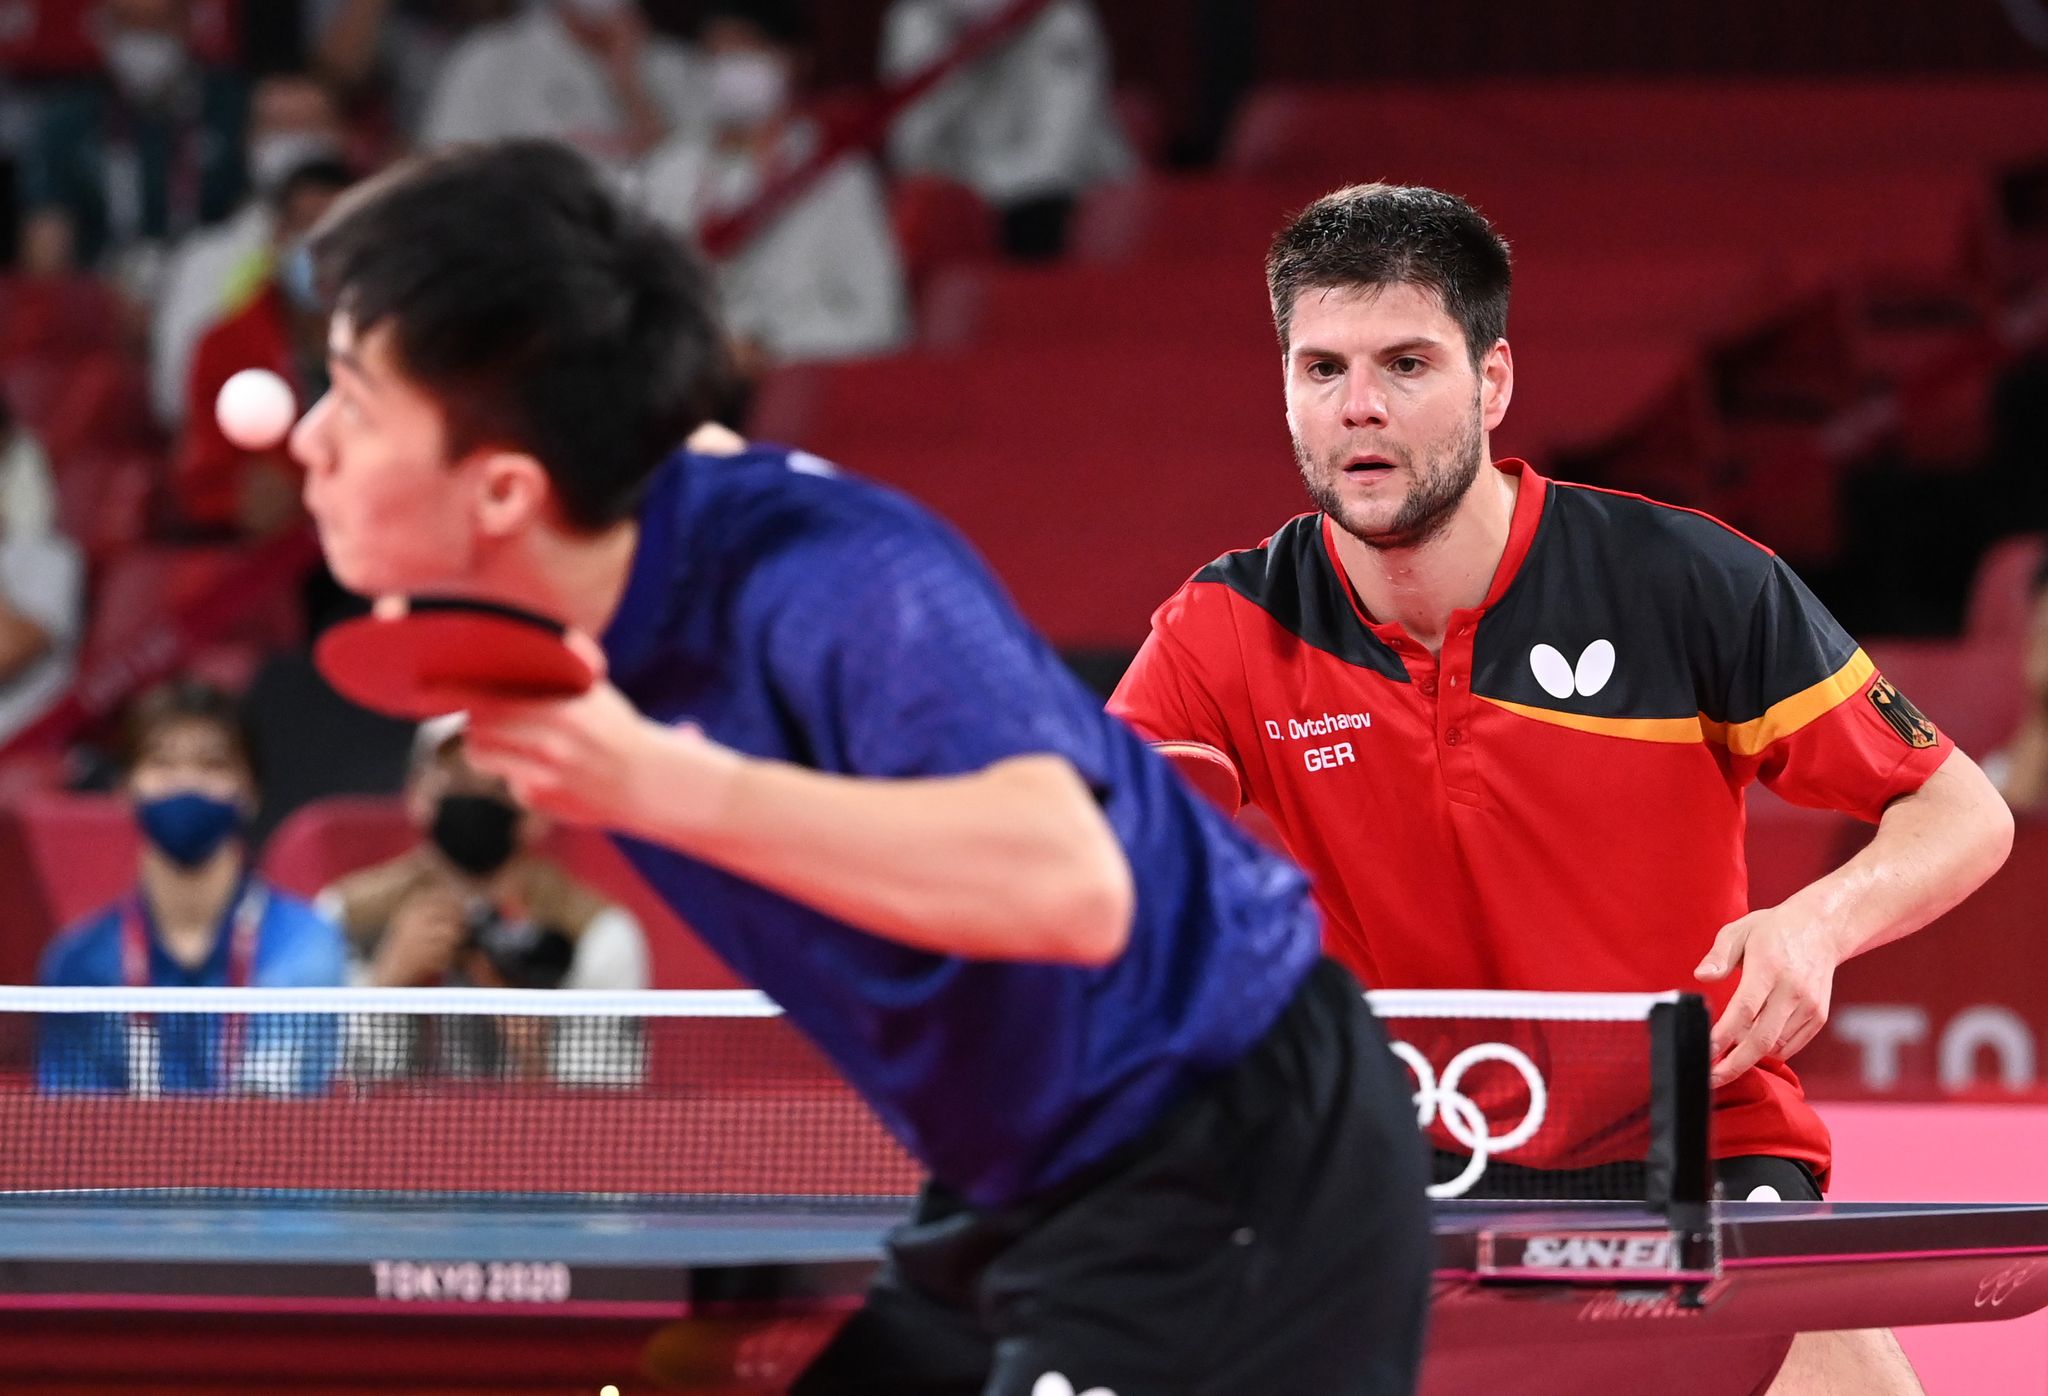 Tischtennis-Star Dimitrij Ovtcharov gewinnt olympisches Bronze gegen Yun Ju Lin aus Taiwan.